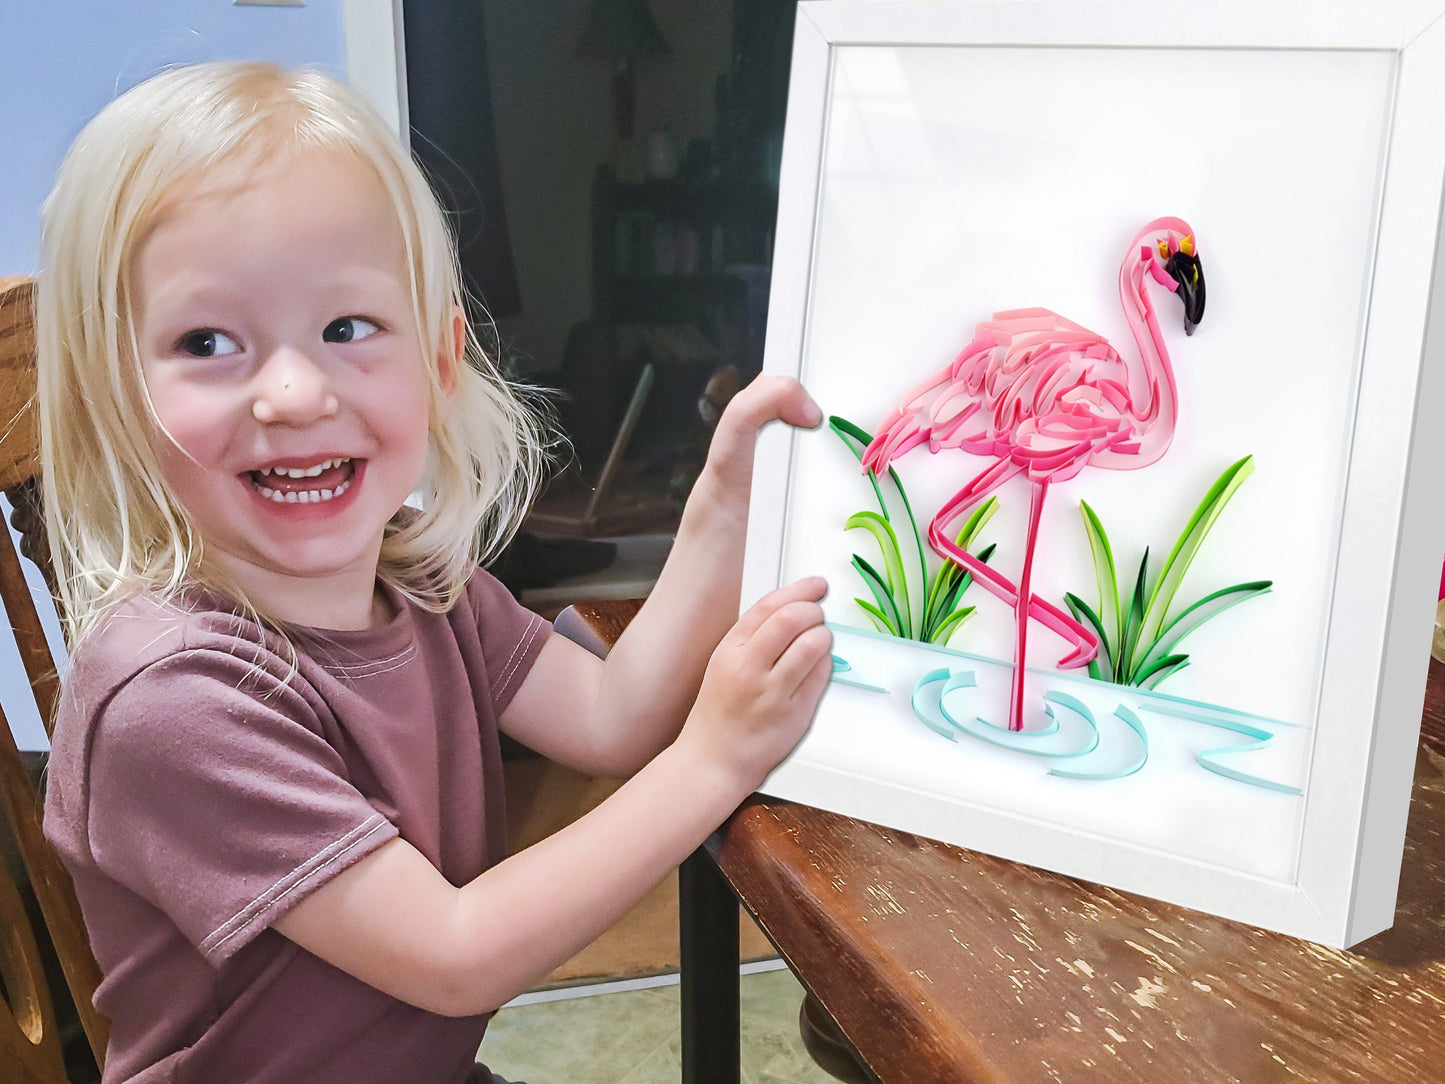 Kit de pintura de filigrana de papel - Flamingo ( 8*10 inch )